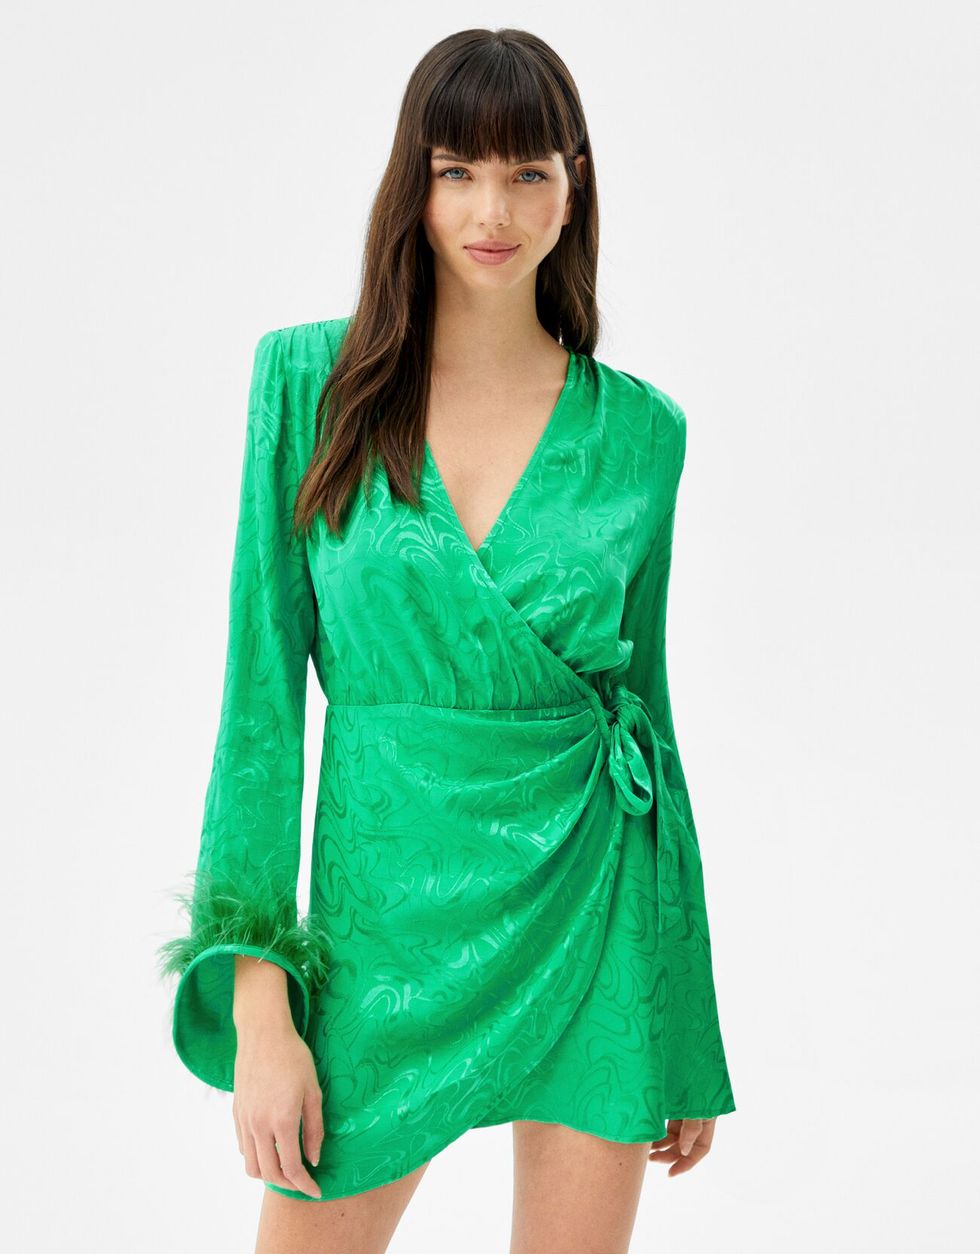 A menudo hablado apagado gemelo El vestido verde de Bershka para un look de fiesta de primavera